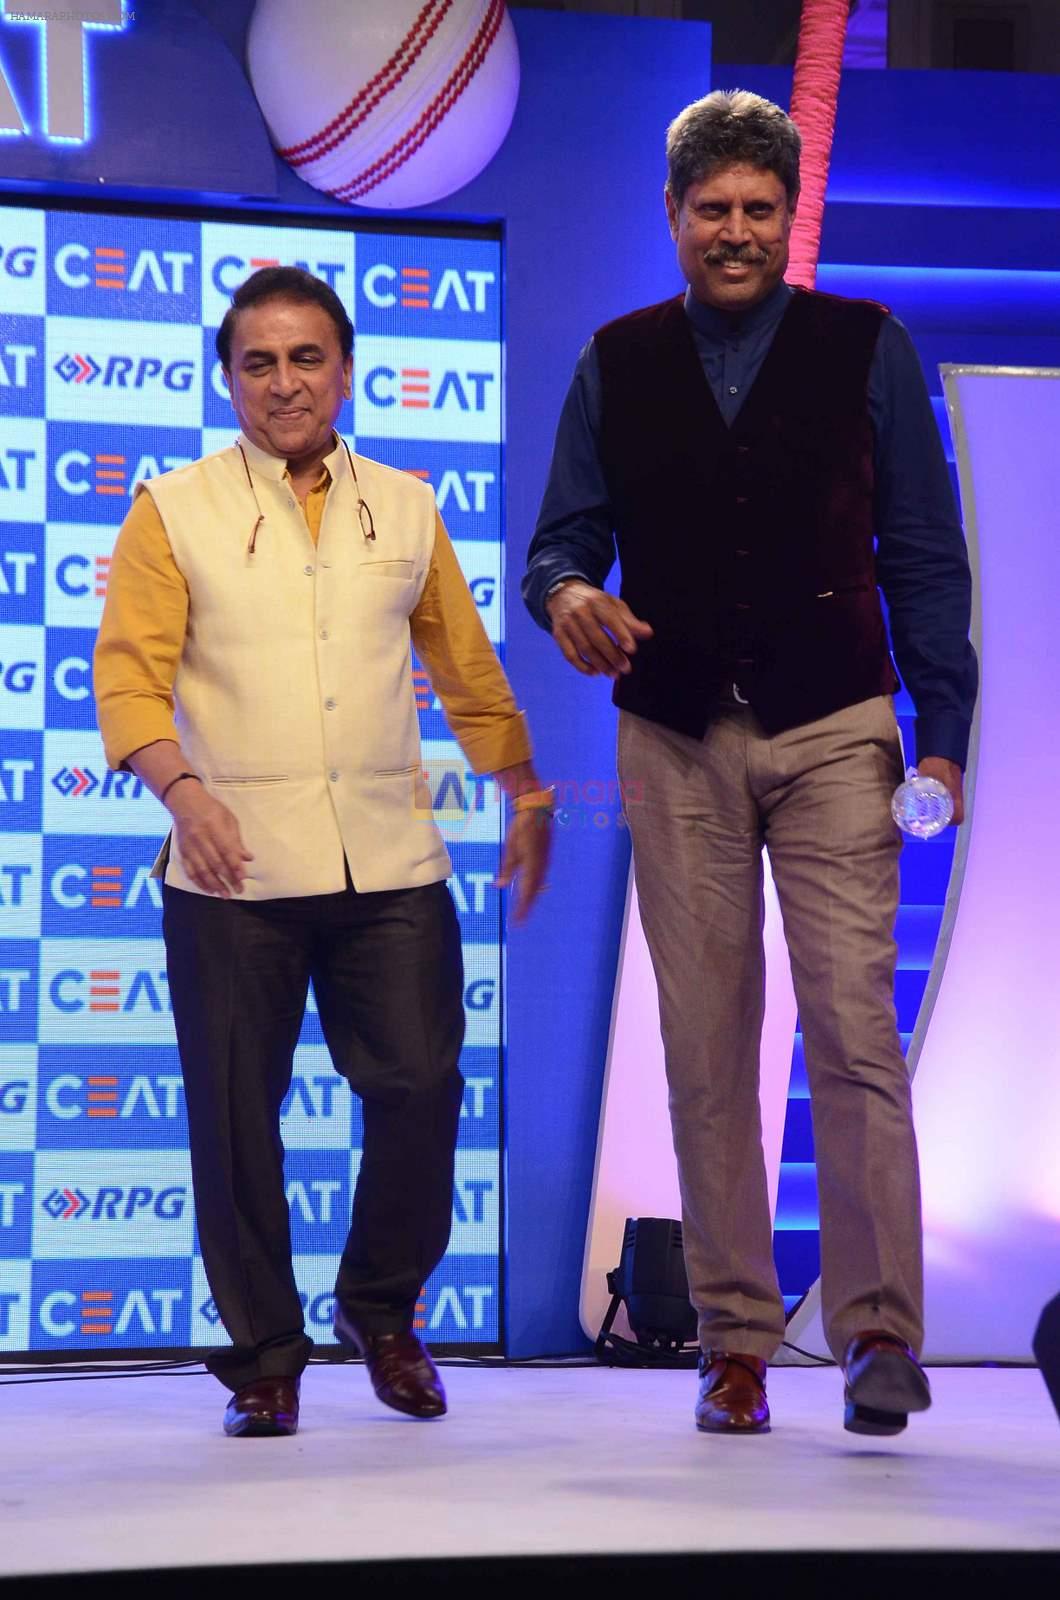 Sunil Gavaskar, Kapil Dev  at Ceat Cricket Awards in Trident, Mumbai on 25th May 2015